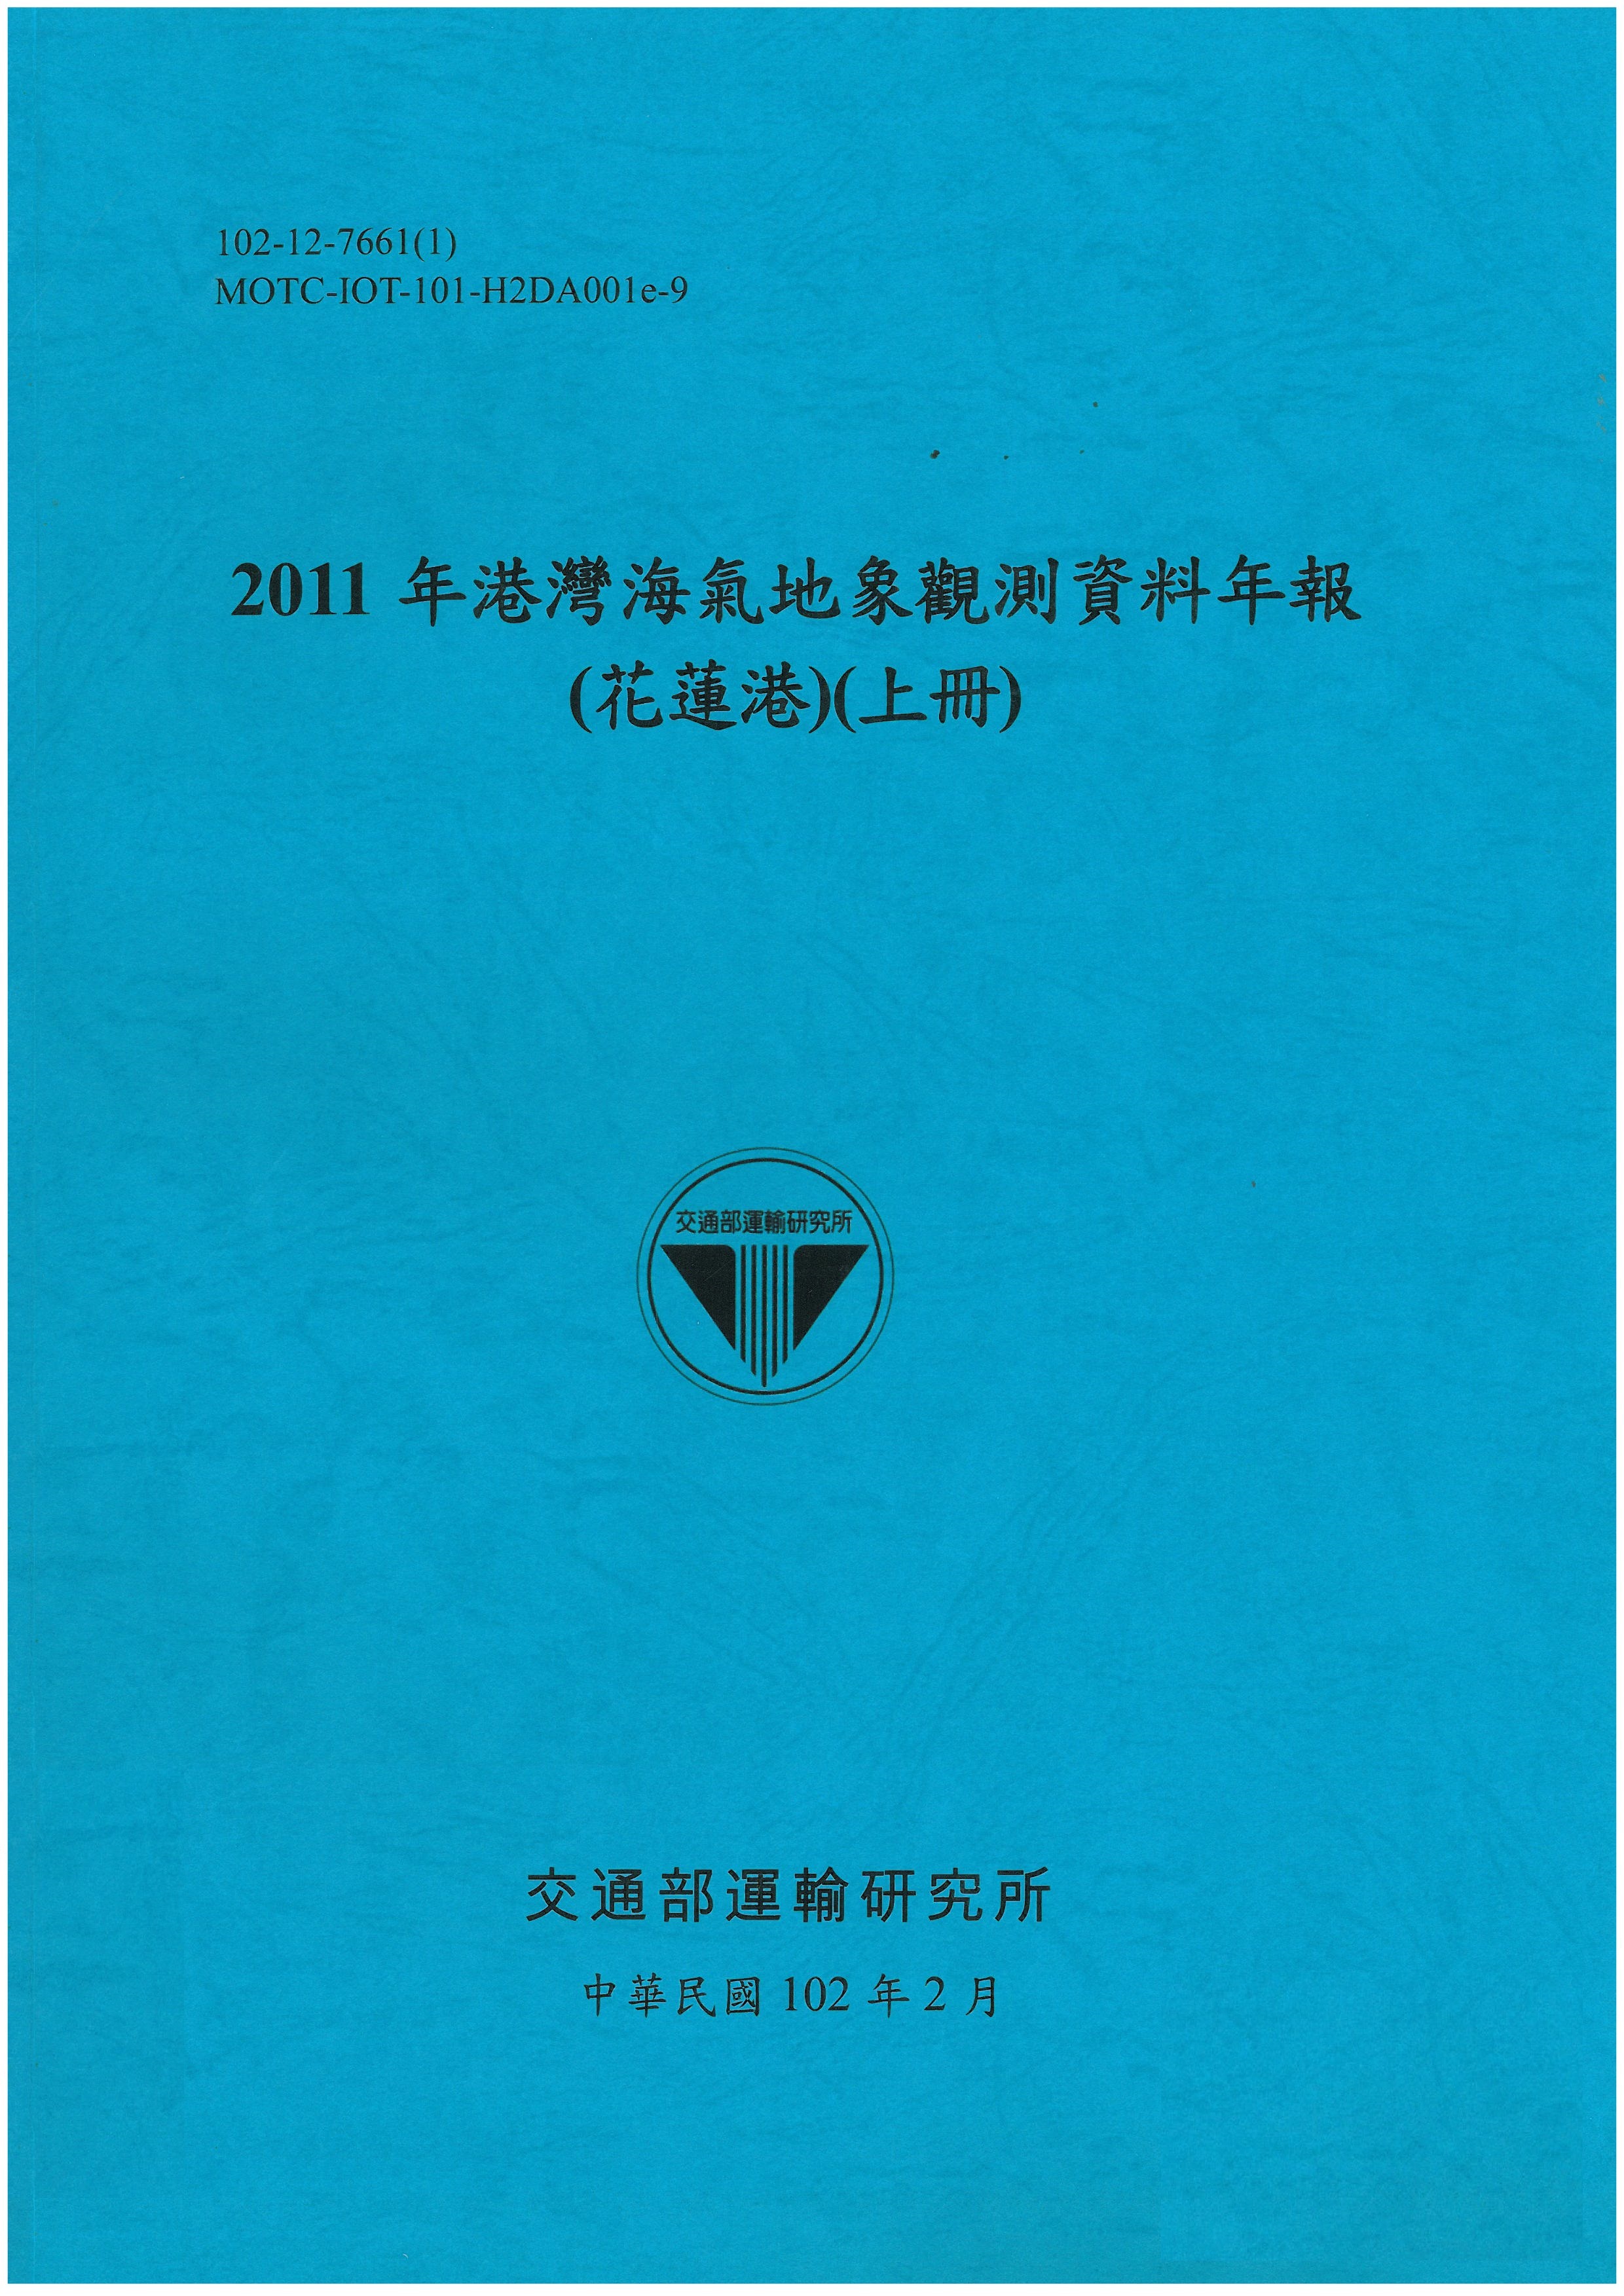 2011年港灣海氣地象觀測資料年報(花蓮港)(上冊)